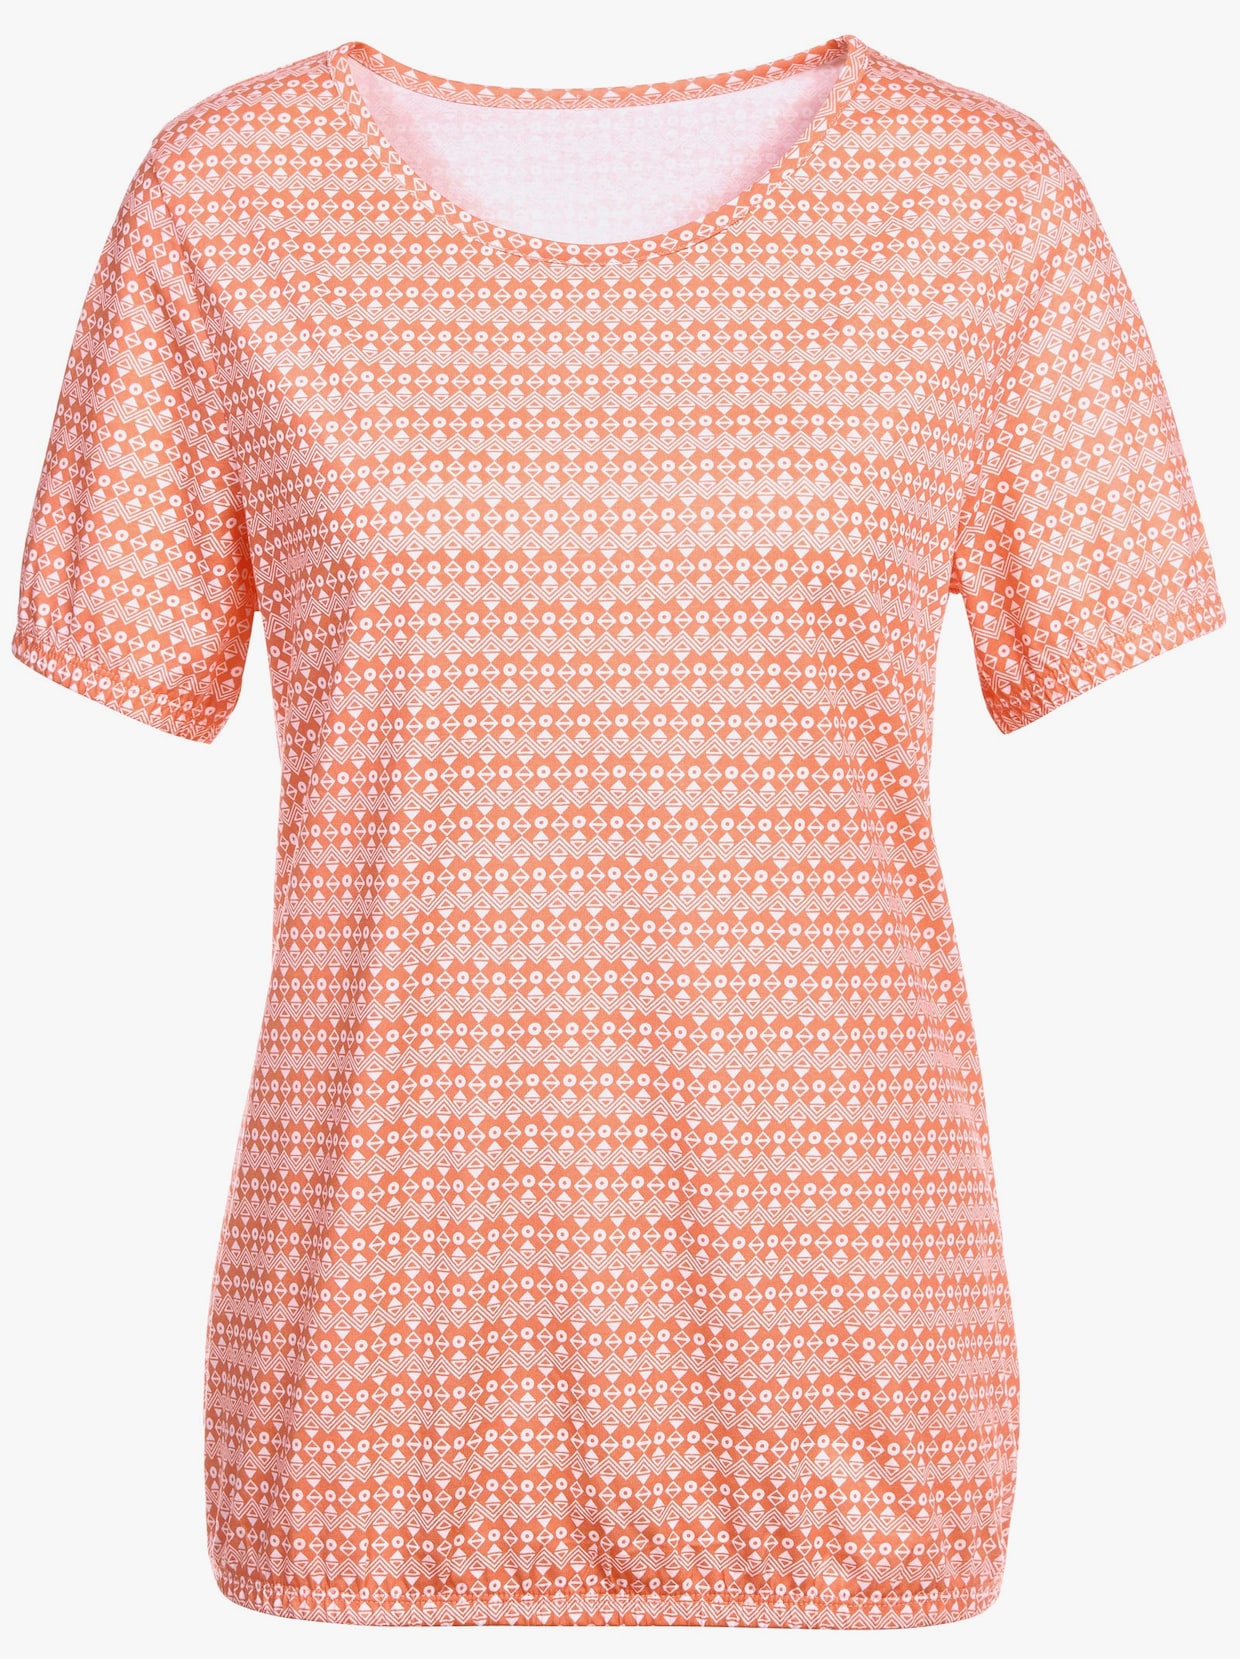 Tričko s potlačou - oranžová vzorovaná